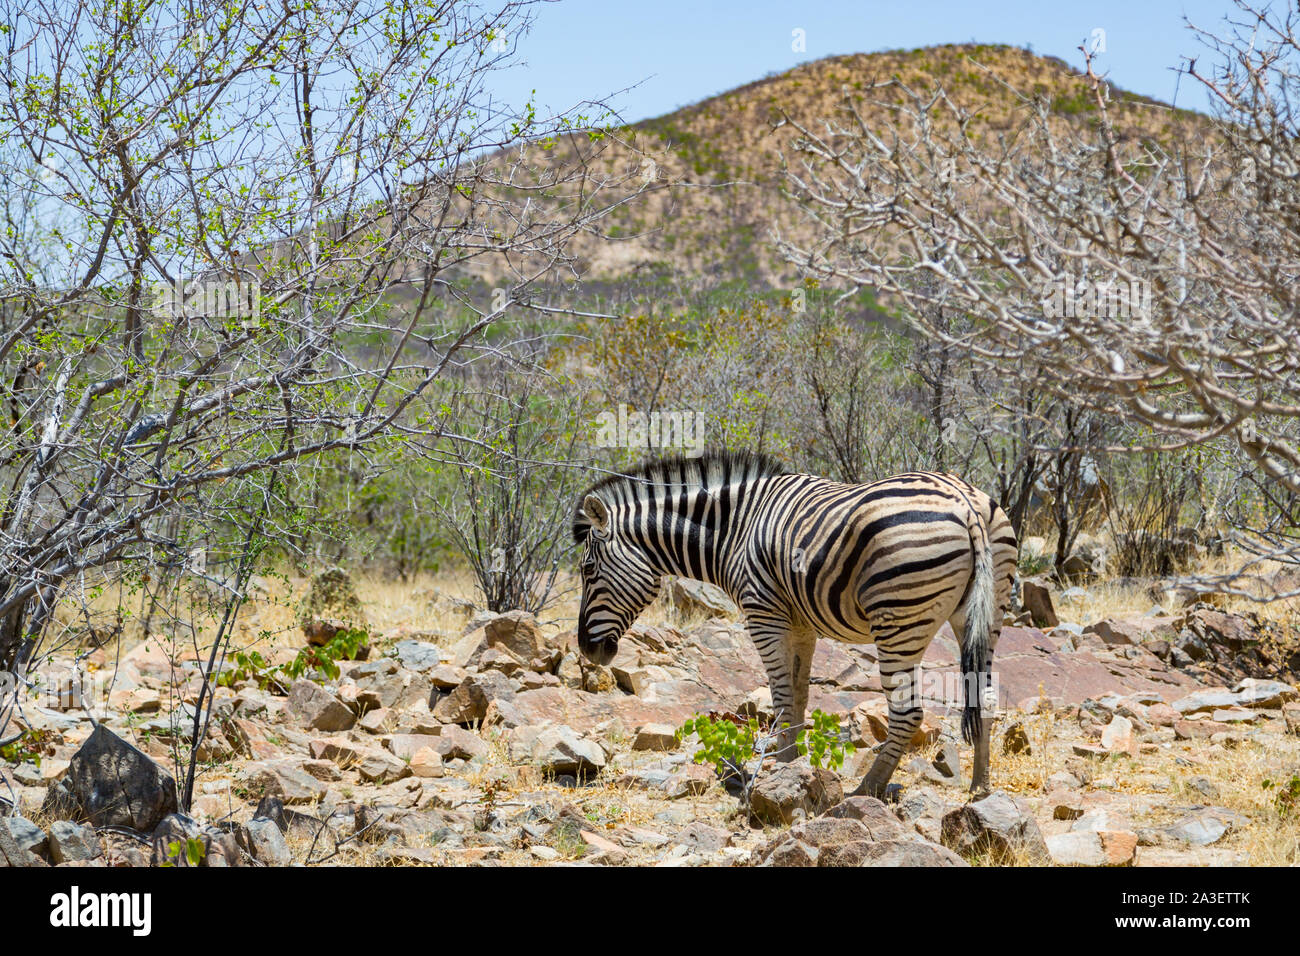 single zebra scavenging in natural savanna habitat in Namibia Stock Photo